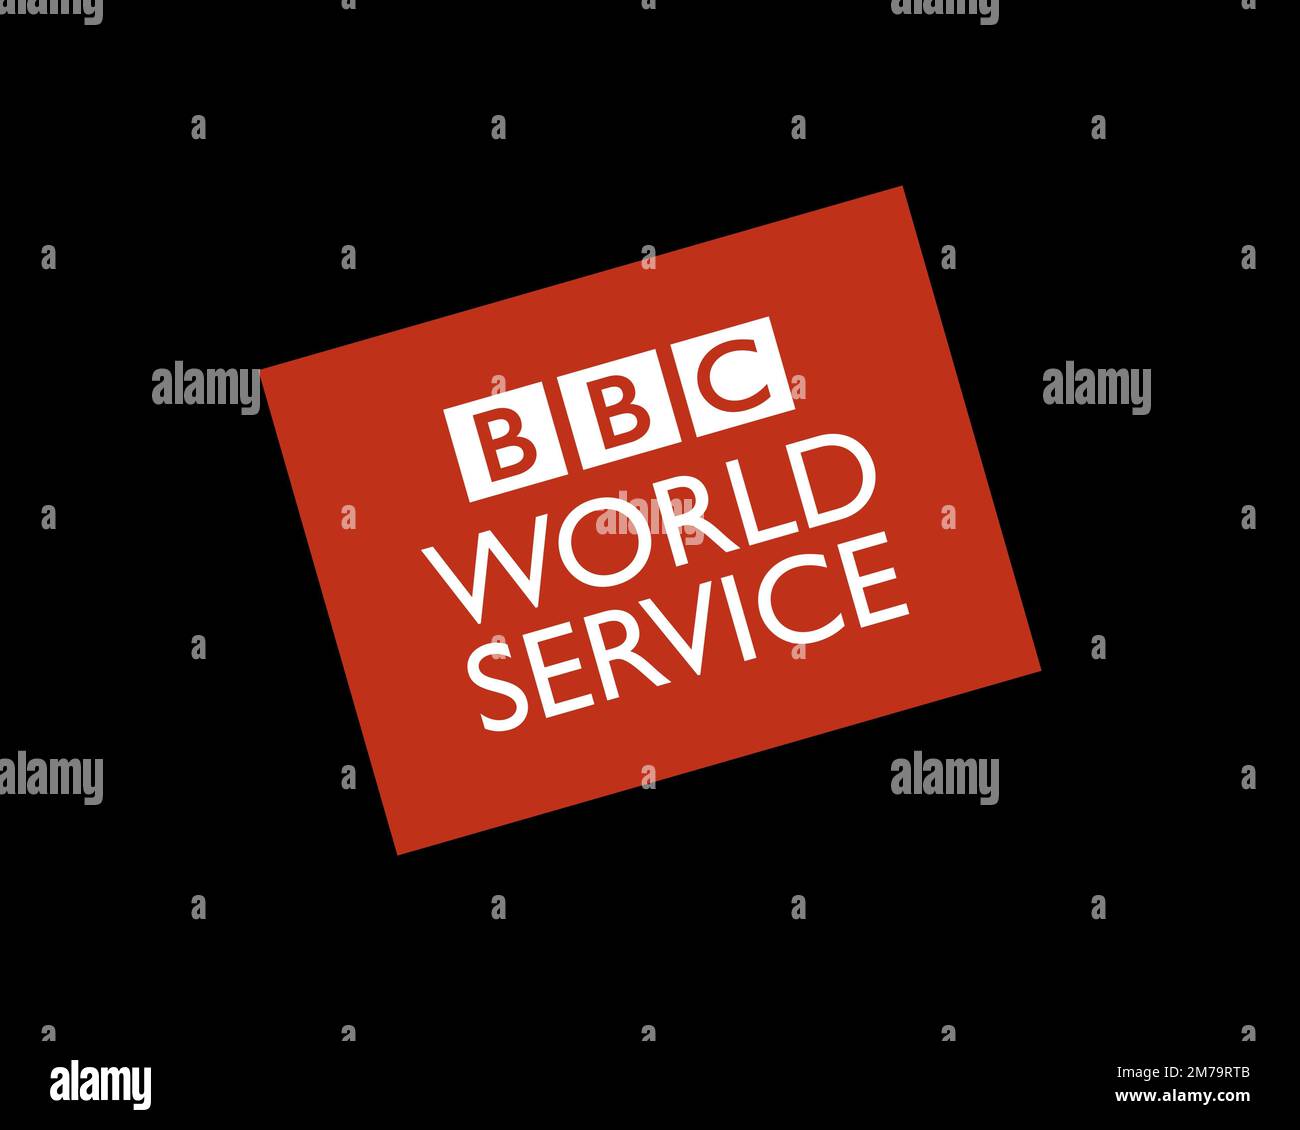 BBC World Service, logo pivoté, arrière-plan noir Banque D'Images